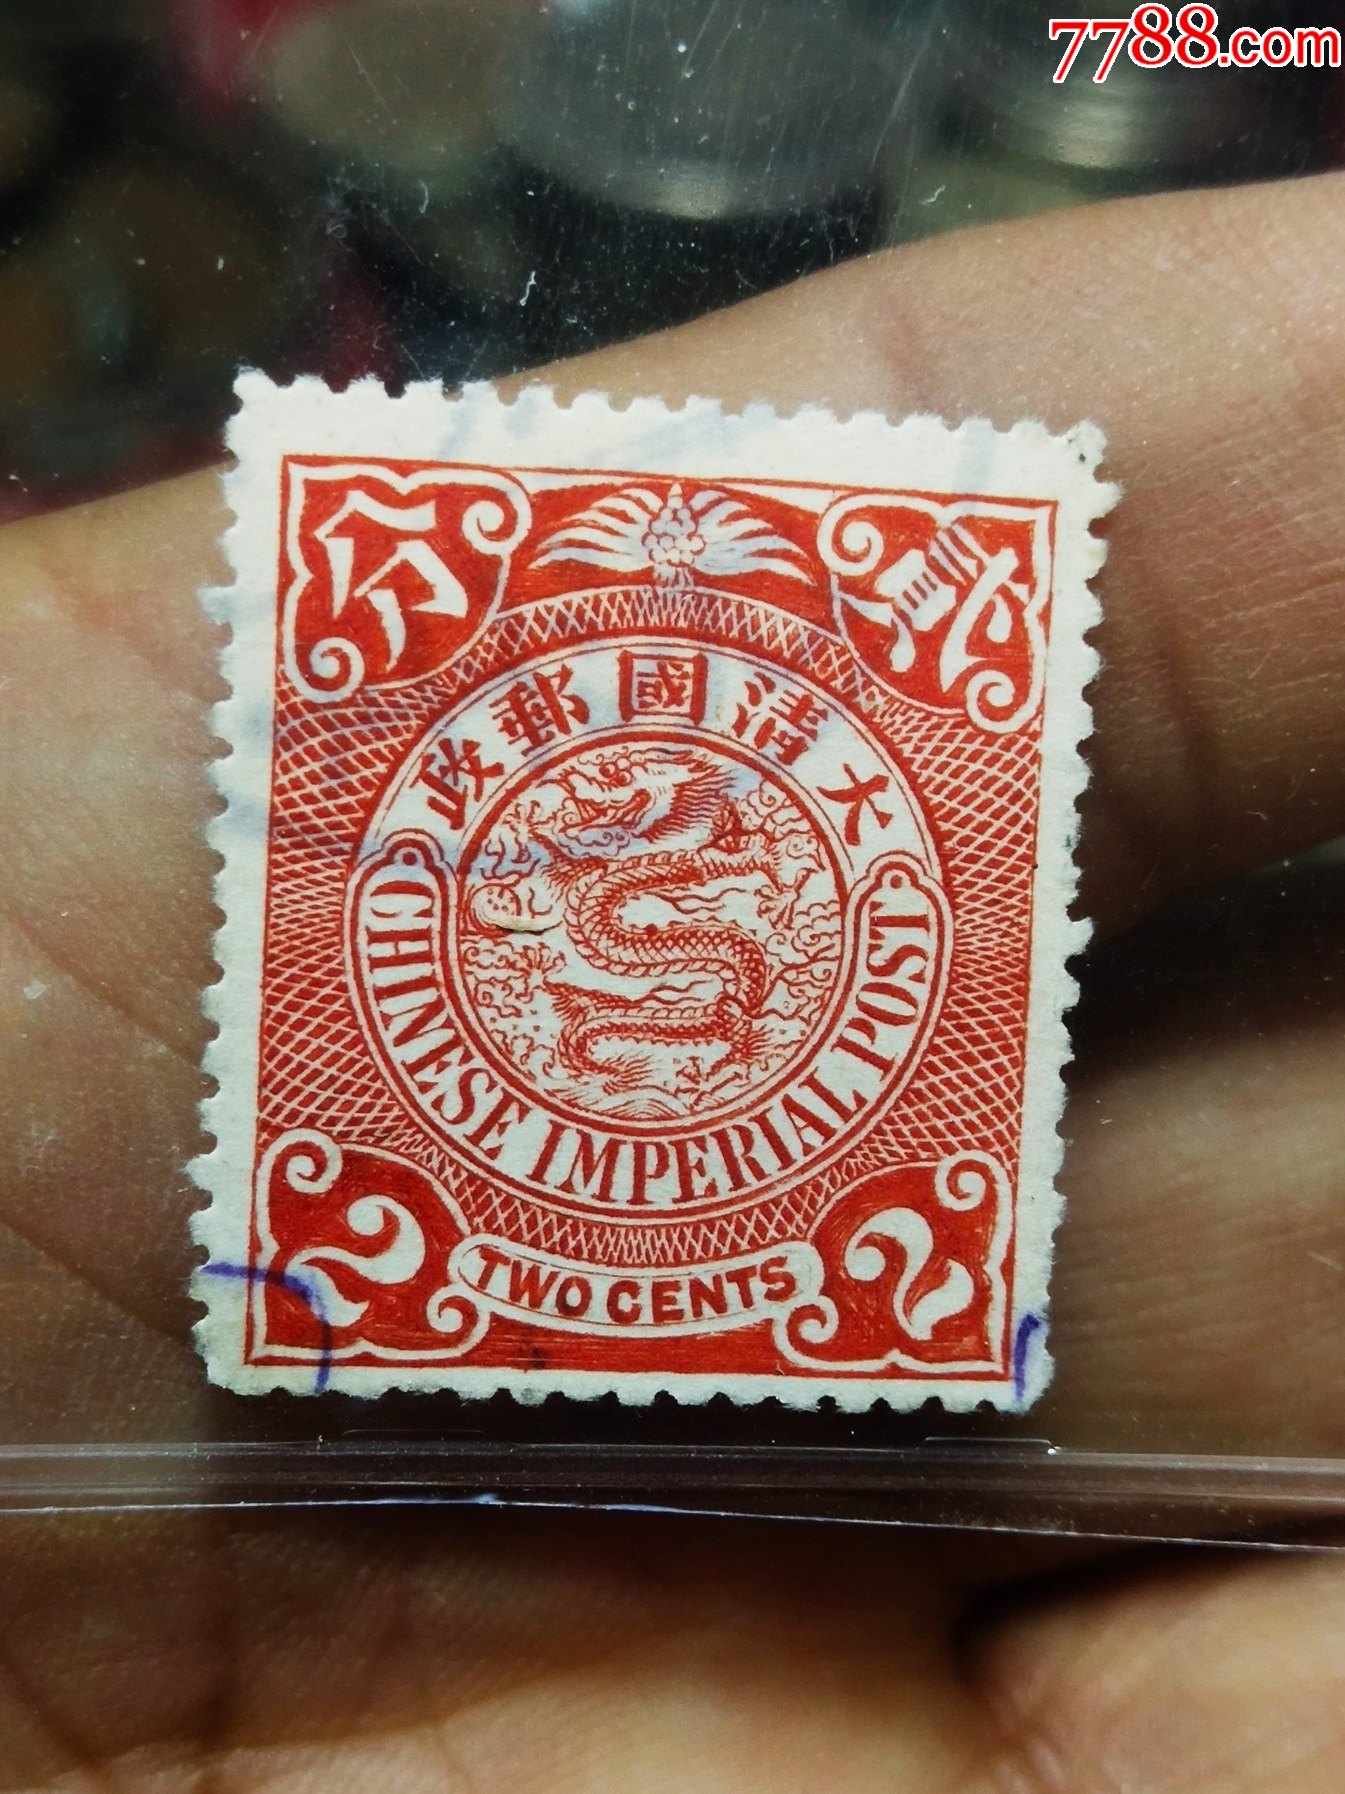 大清邮政伦敦雕刻版蟠龙百年经典贰分红邮票发行时间约1901